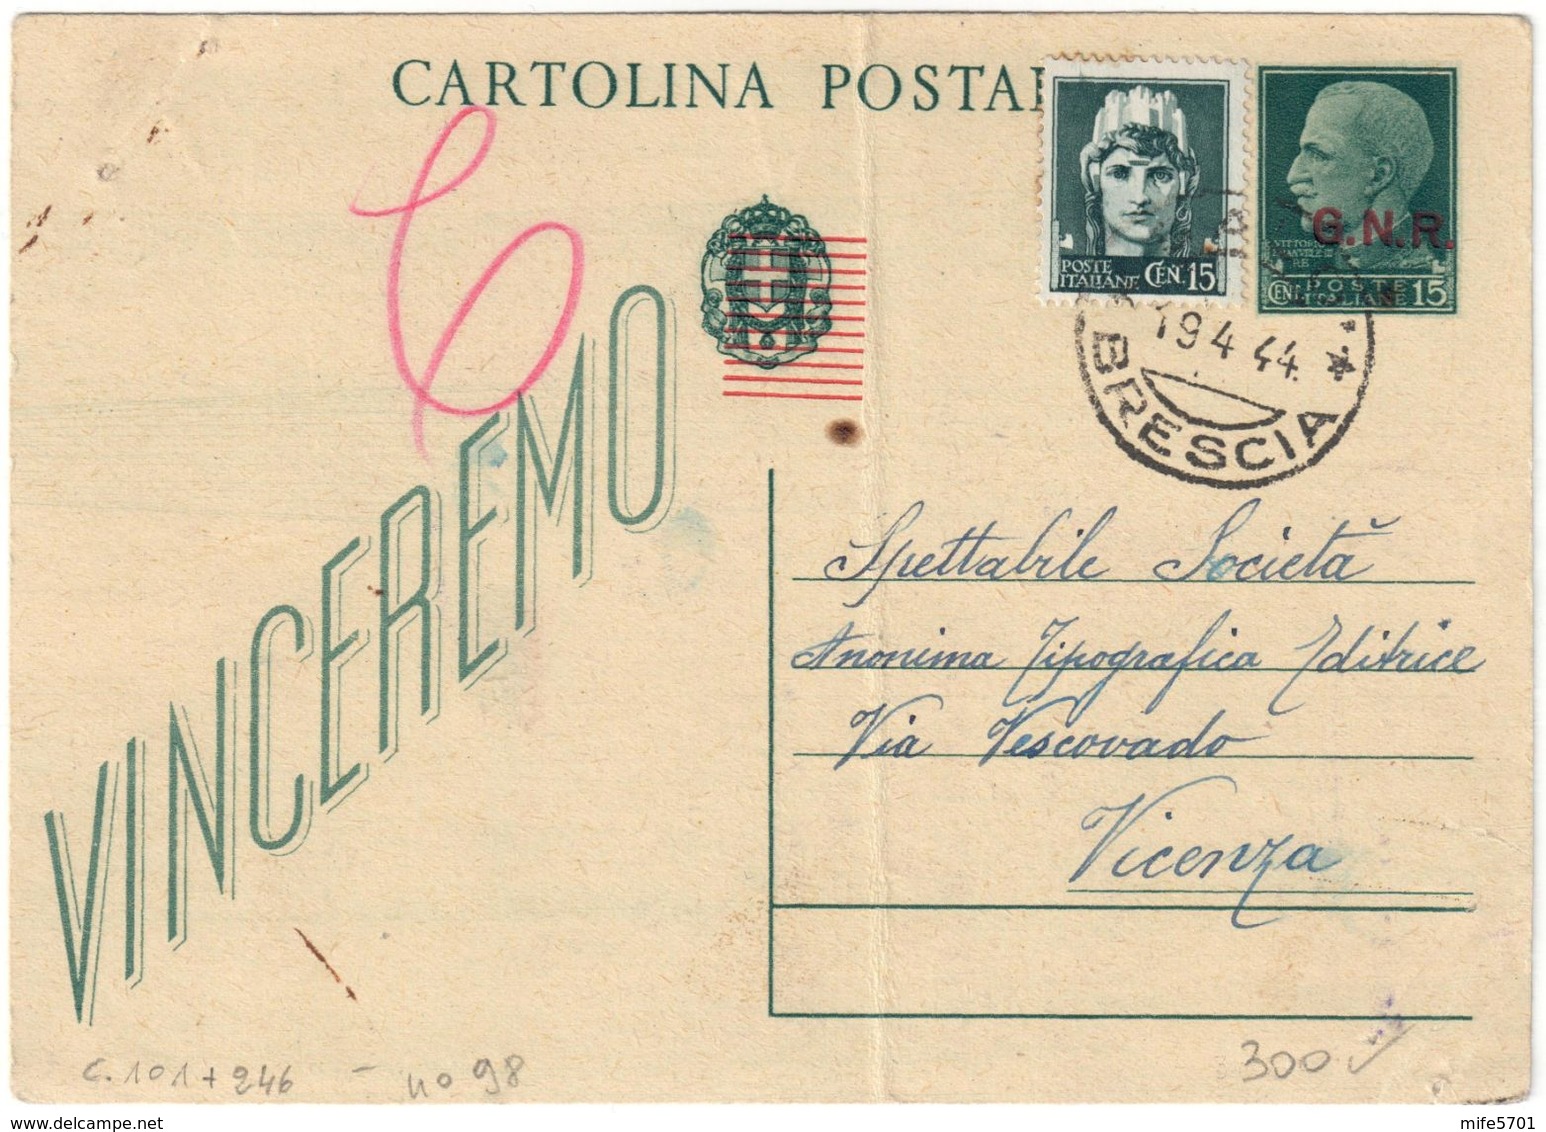 REPUBBLICA SOCIALE - INTERO POSTALE C. 15 SOPRASTAMPA G.N.R. + C. 15 IMPERIALE - SALO 19.4.1944 - FILAGRANO C101 - Stamped Stationery